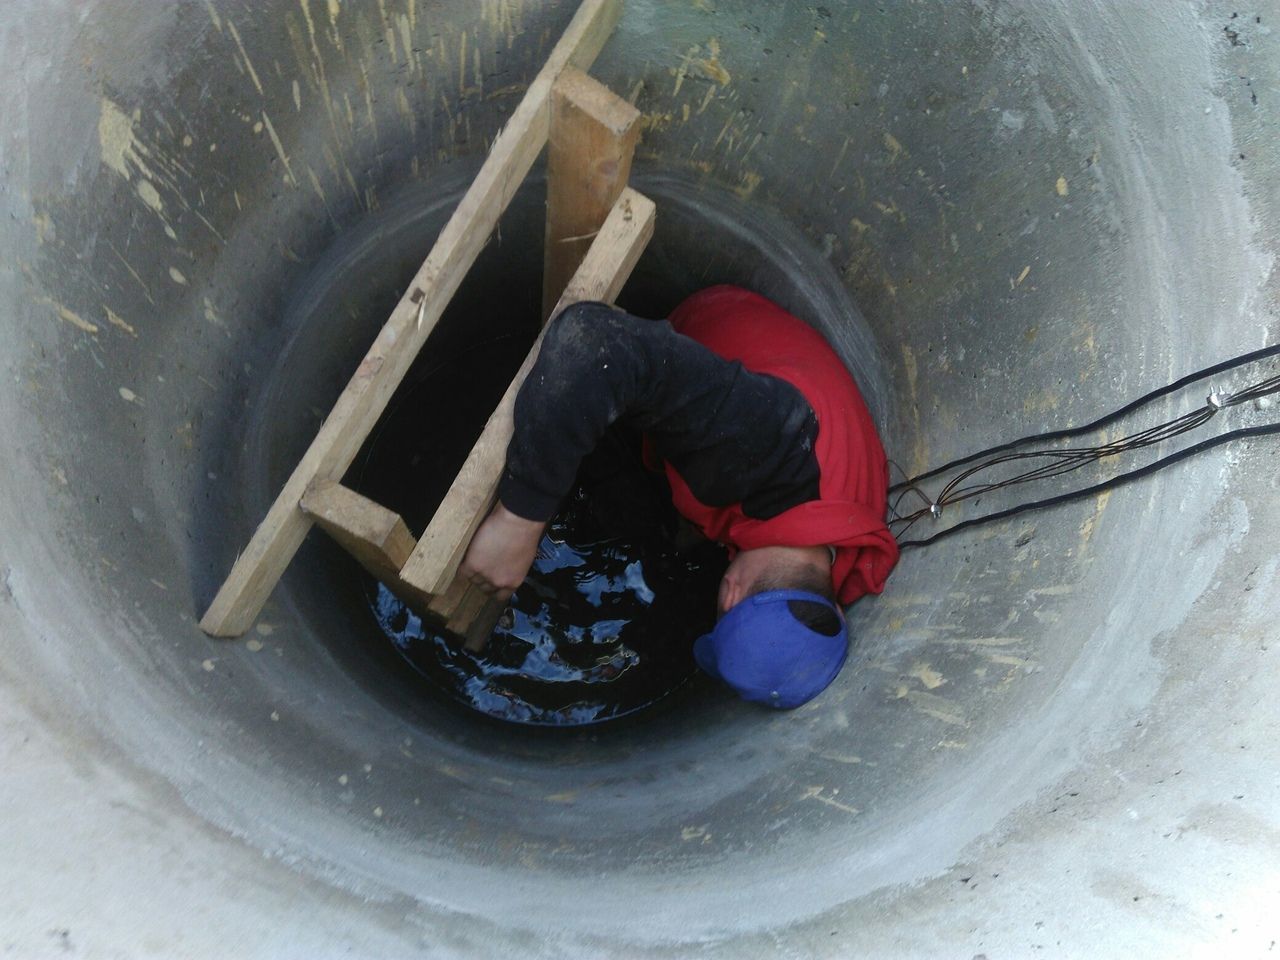 Установка насоса воды в колодце, Ногинский район.